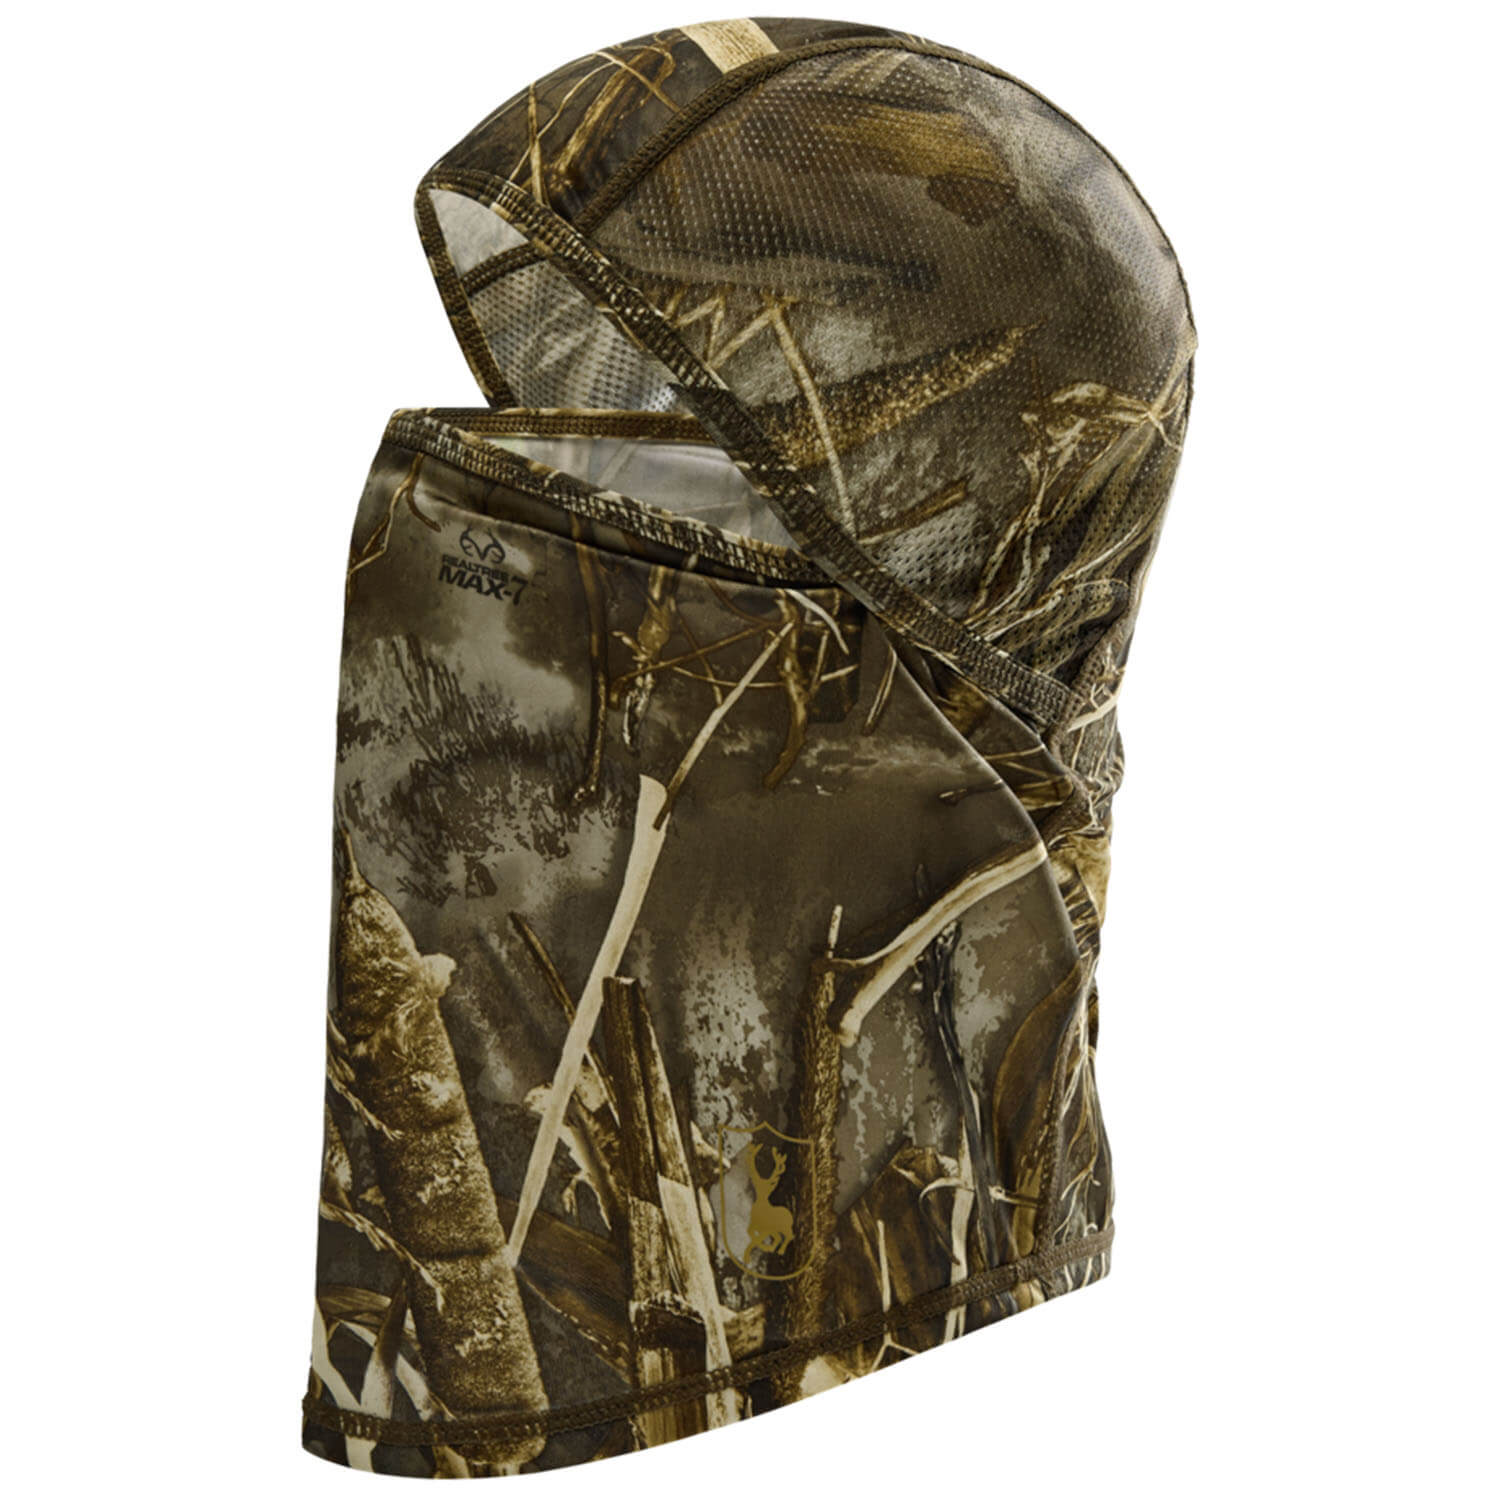  Deerhunter Gezichtsmasker Volgelaats (Realtree MAX-7) - Camouflagemaskers